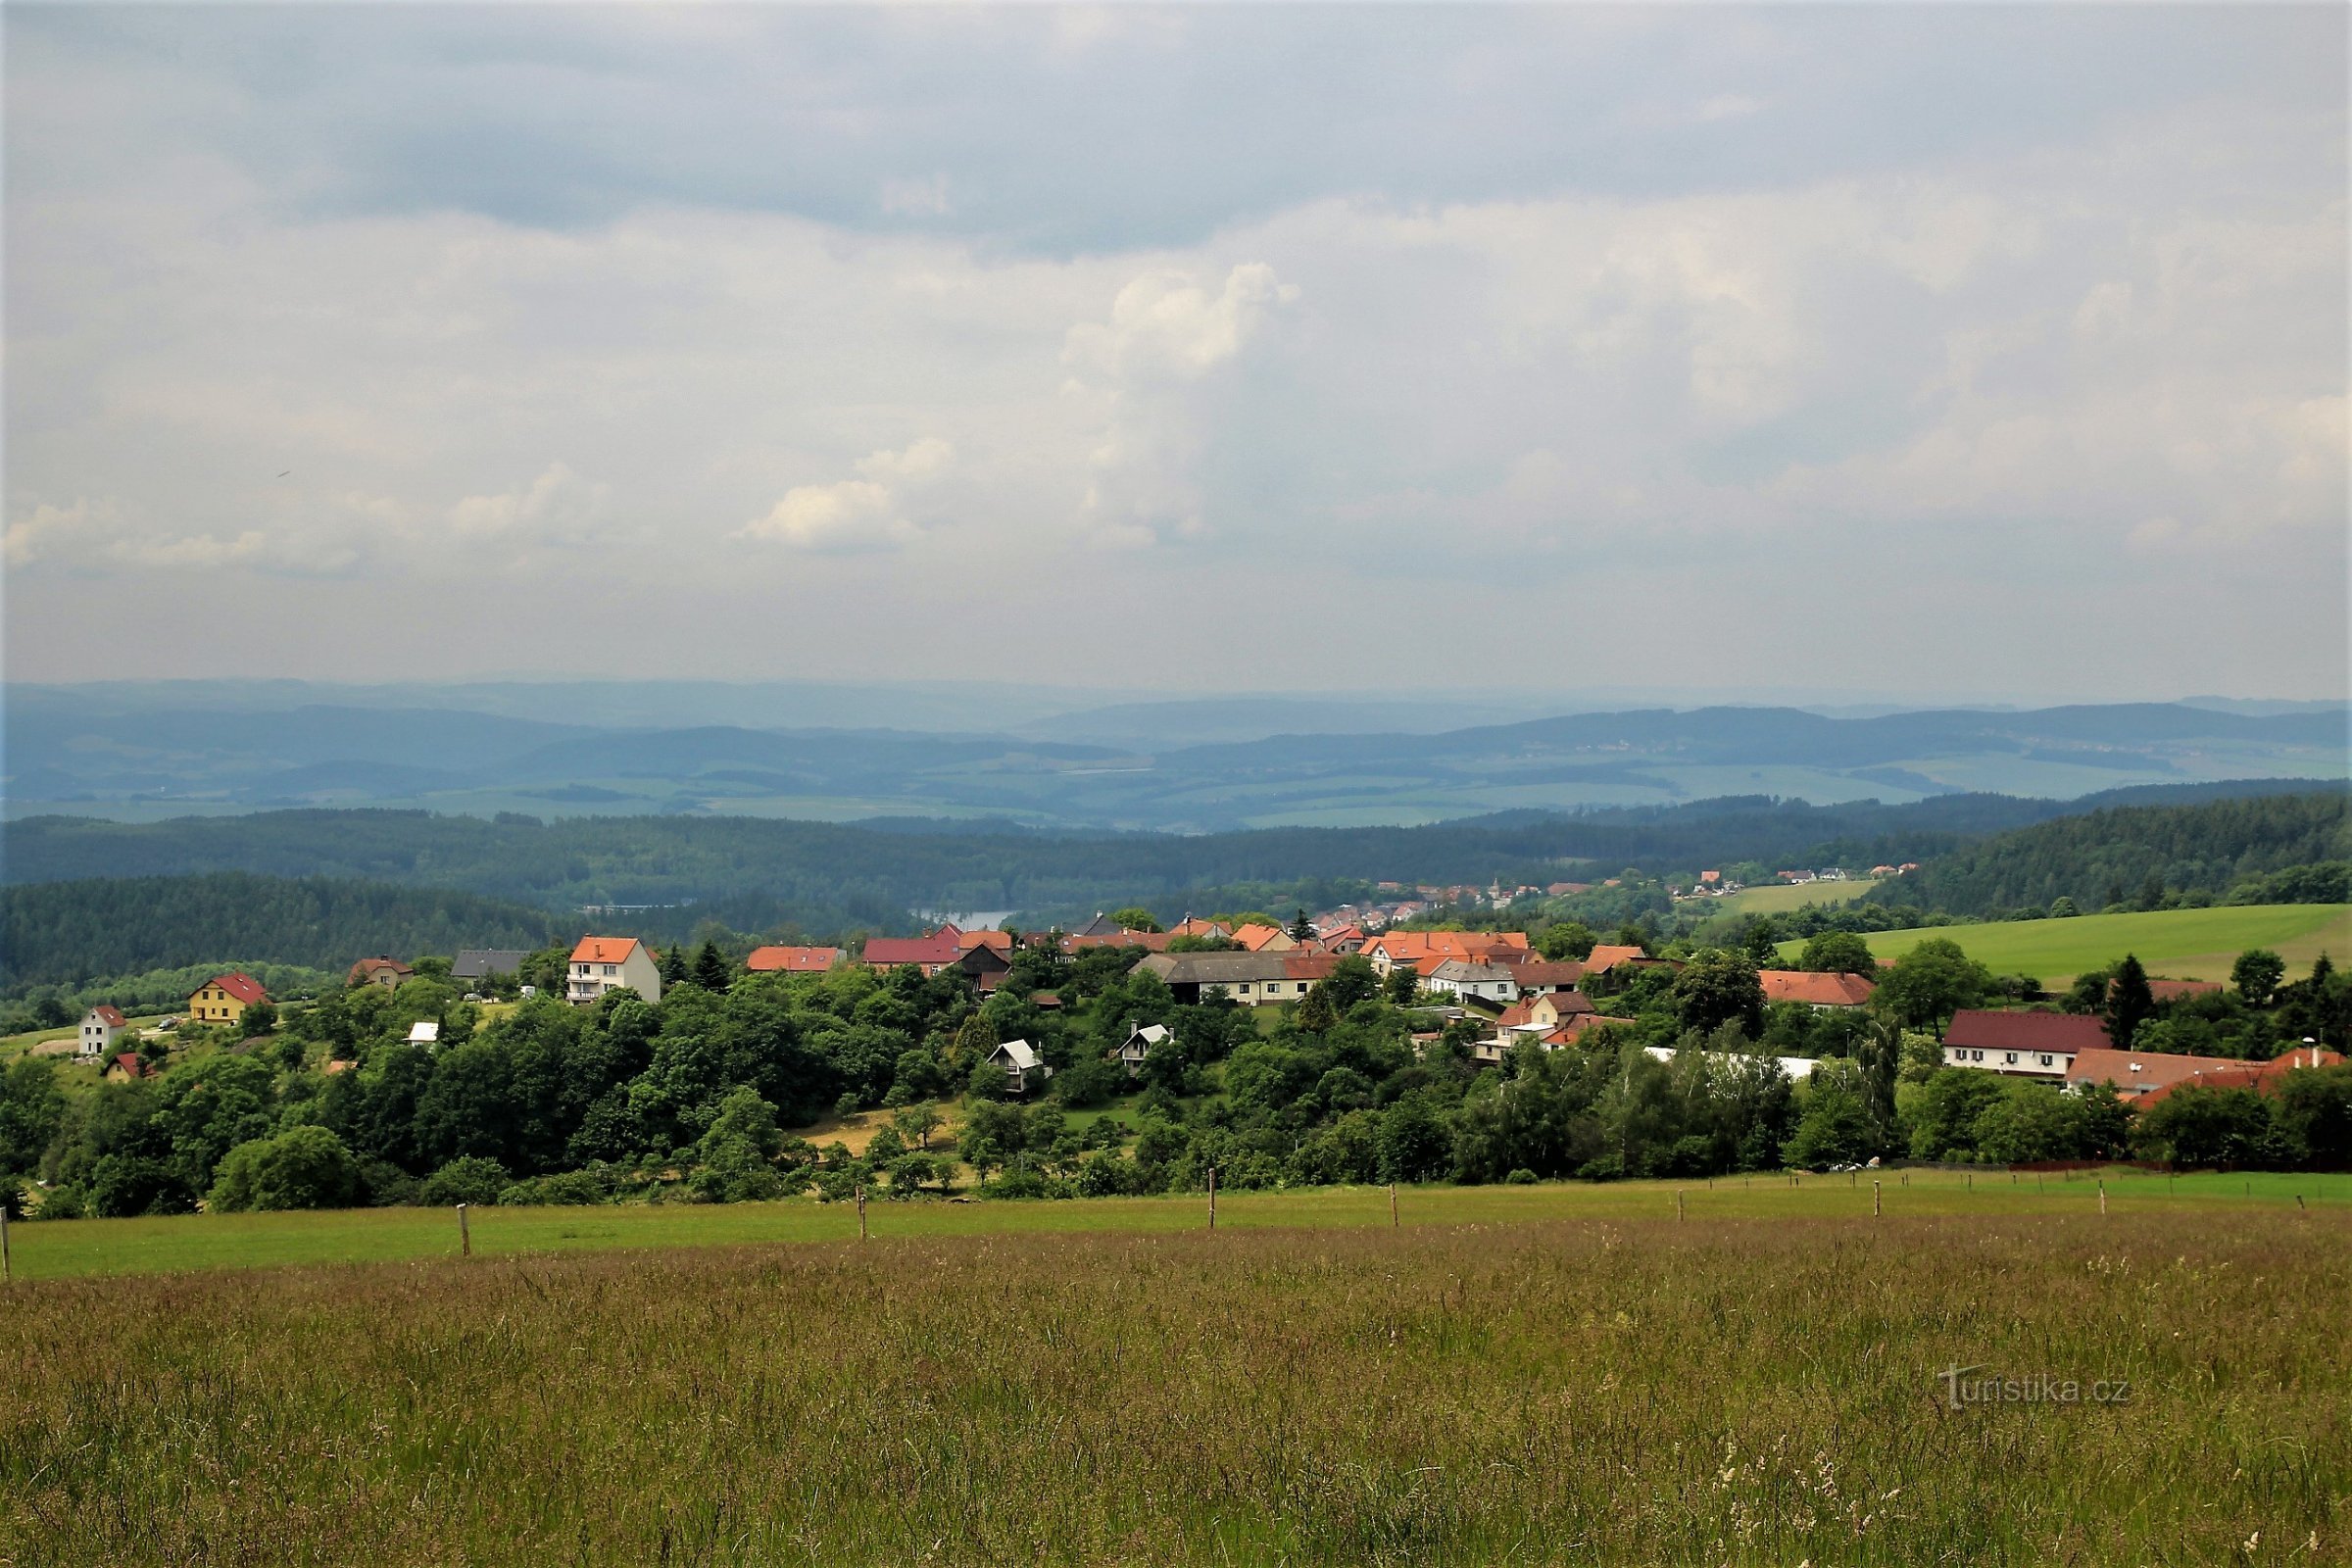 Κάτω από τη θέα είναι το γραφικό χωριό Velenov. Κάτω από αυτό είναι μια μεγάλη λεκάνη προς το Bosko